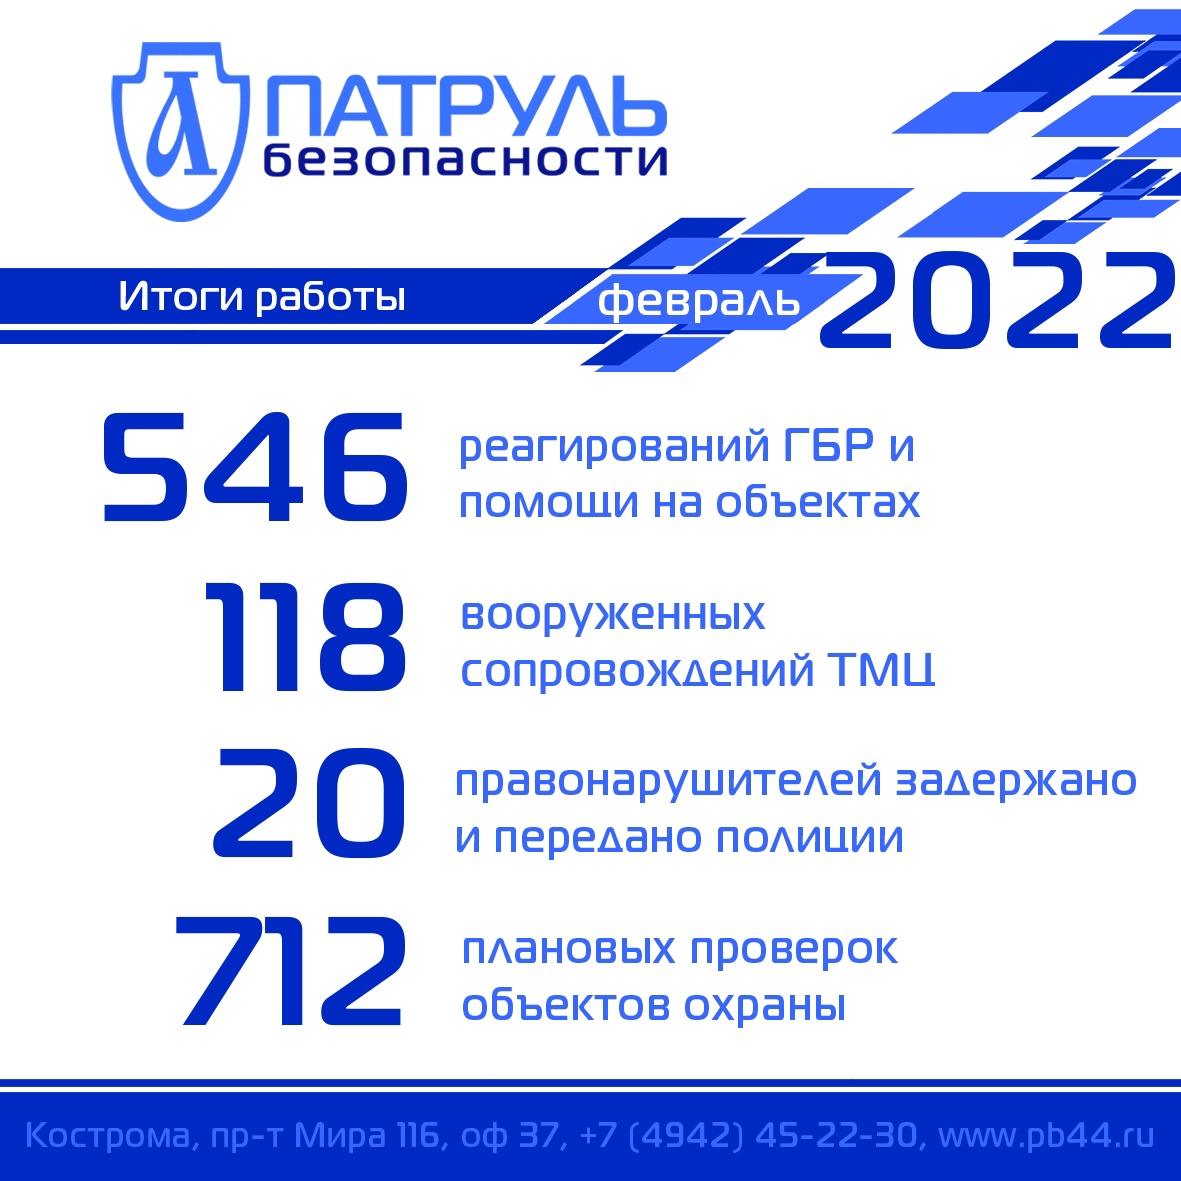 Итоги работы компании "Патруль Безопасности" за февраль 2022 года